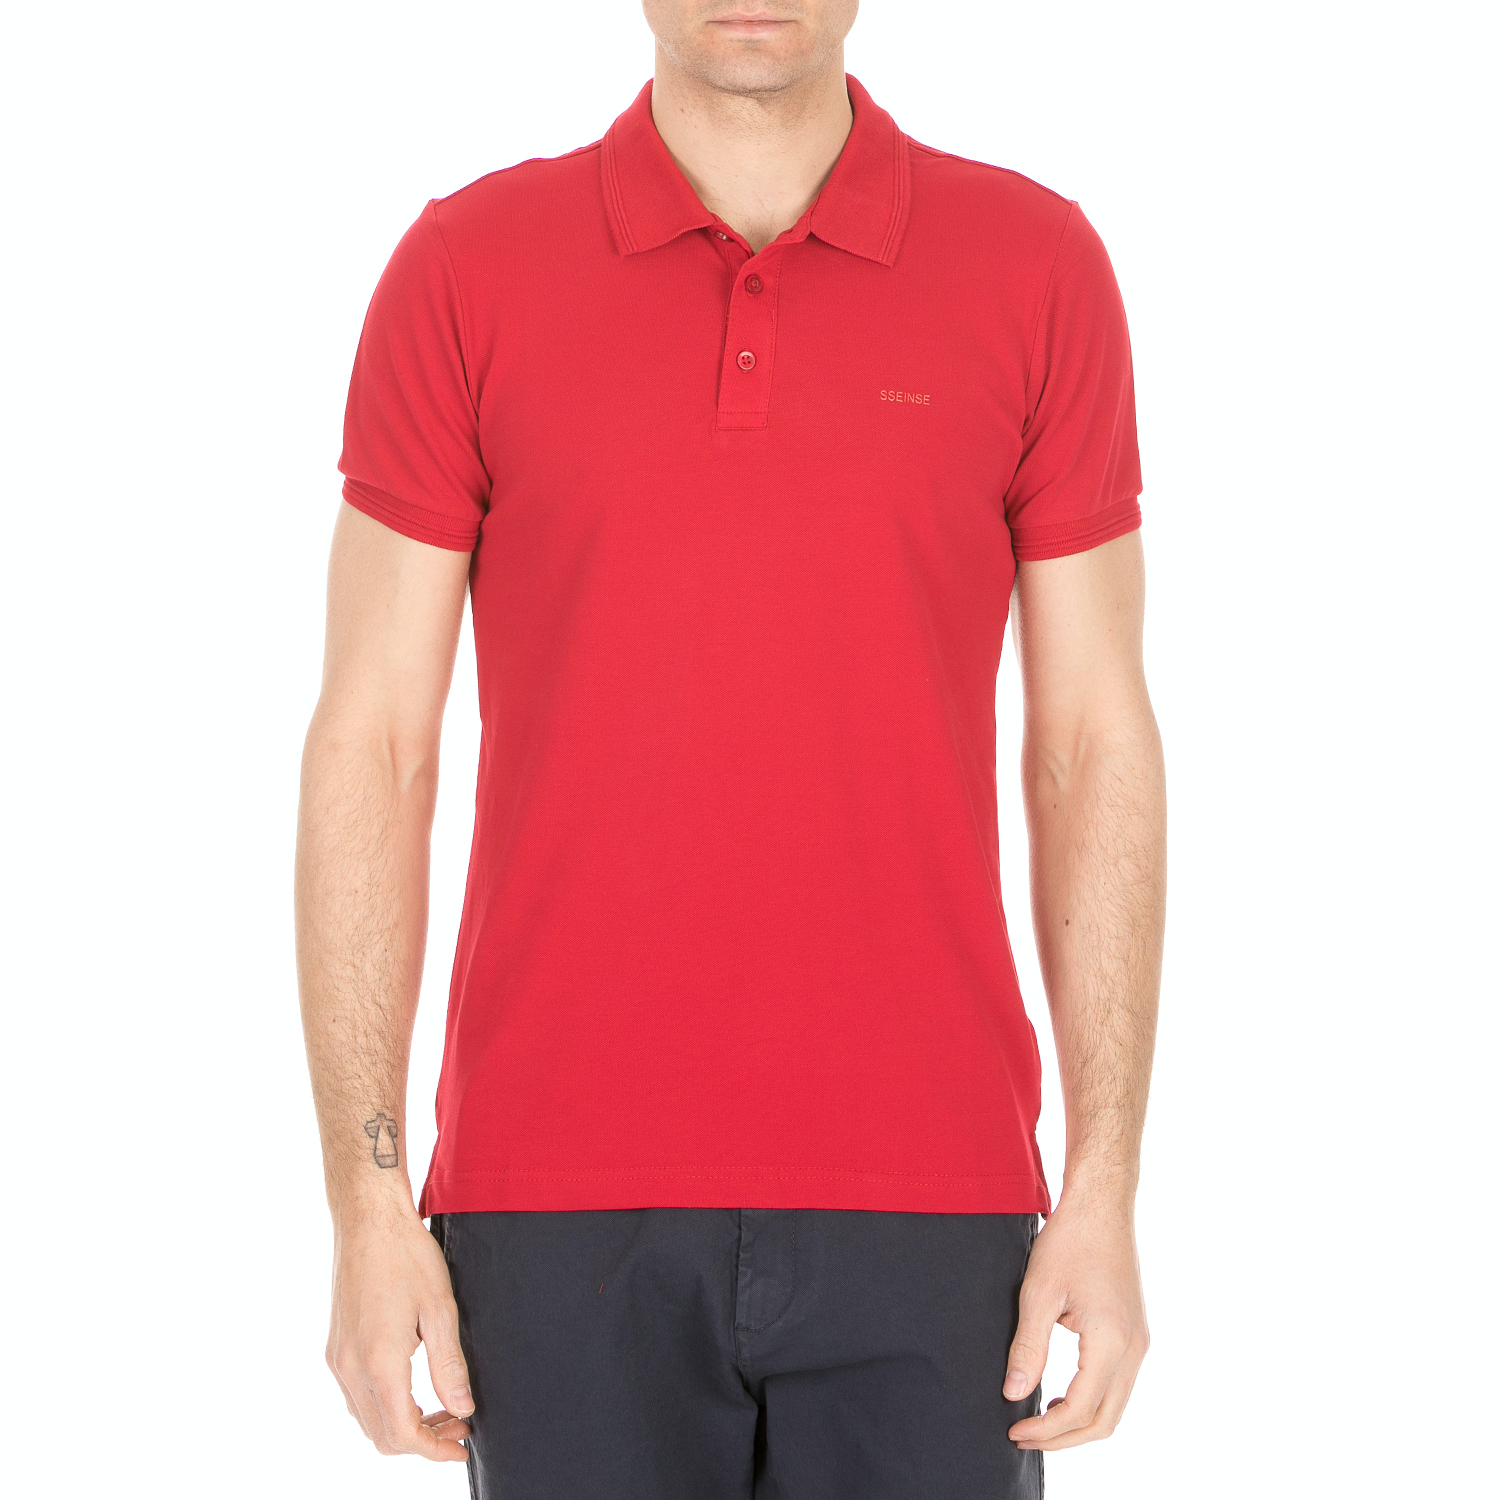 Ανδρικά/Ρούχα/Μπλούζες/Πόλο SSEINSE - Ανδρική κοντομάνικη polo μπλούζα SSEINSE κόκκινη